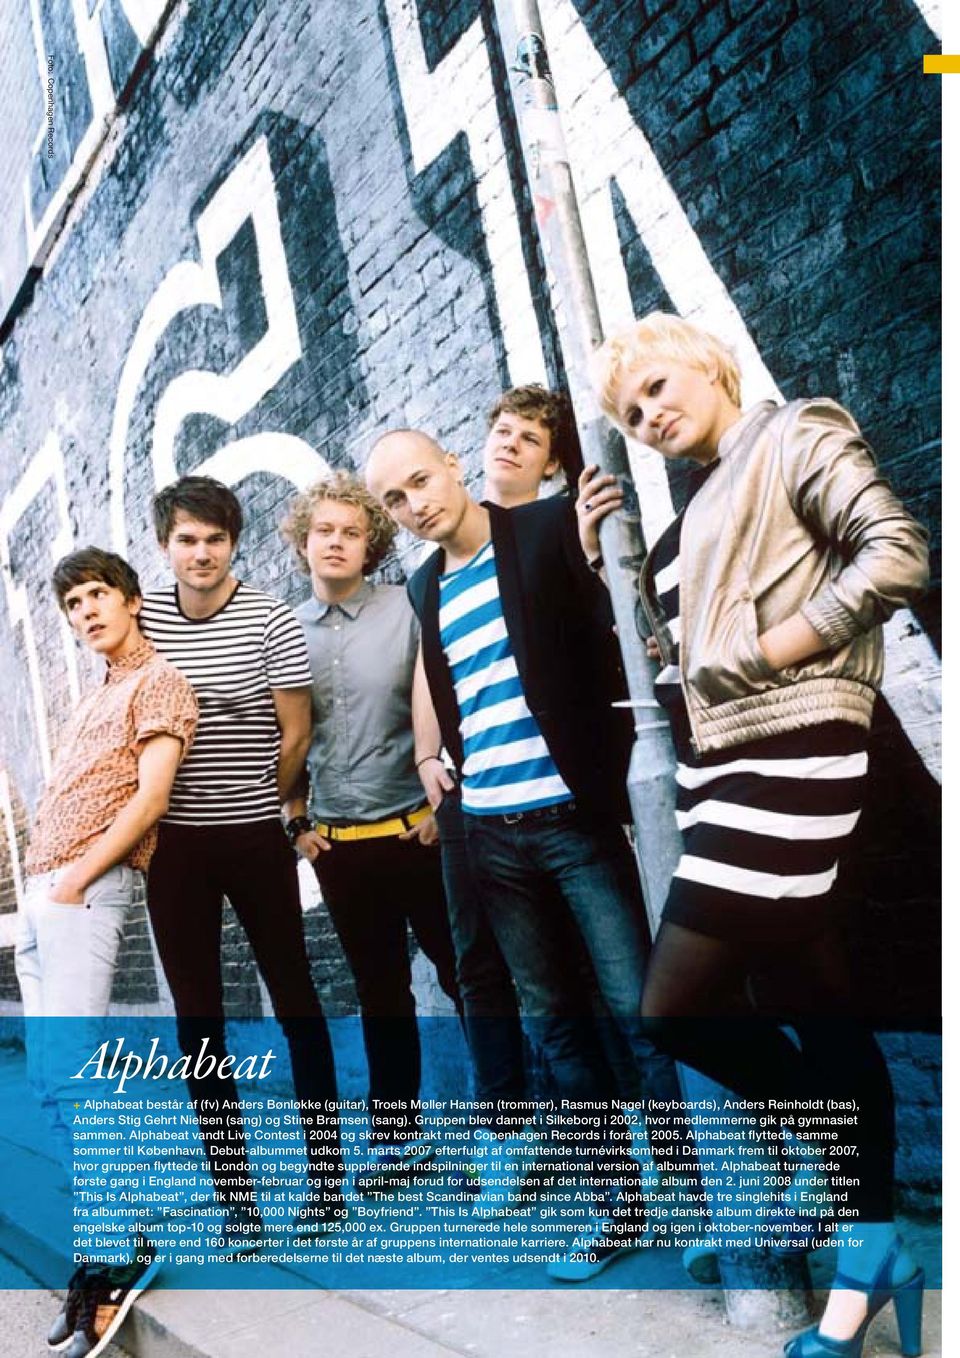 Alphabeat vandt Live Contest i 2004 og skrev kontrakt med Copenhagen Records i foråret 2005. Alphabeat flyttede samme sommer til København. Debut-albummet udkom 5.